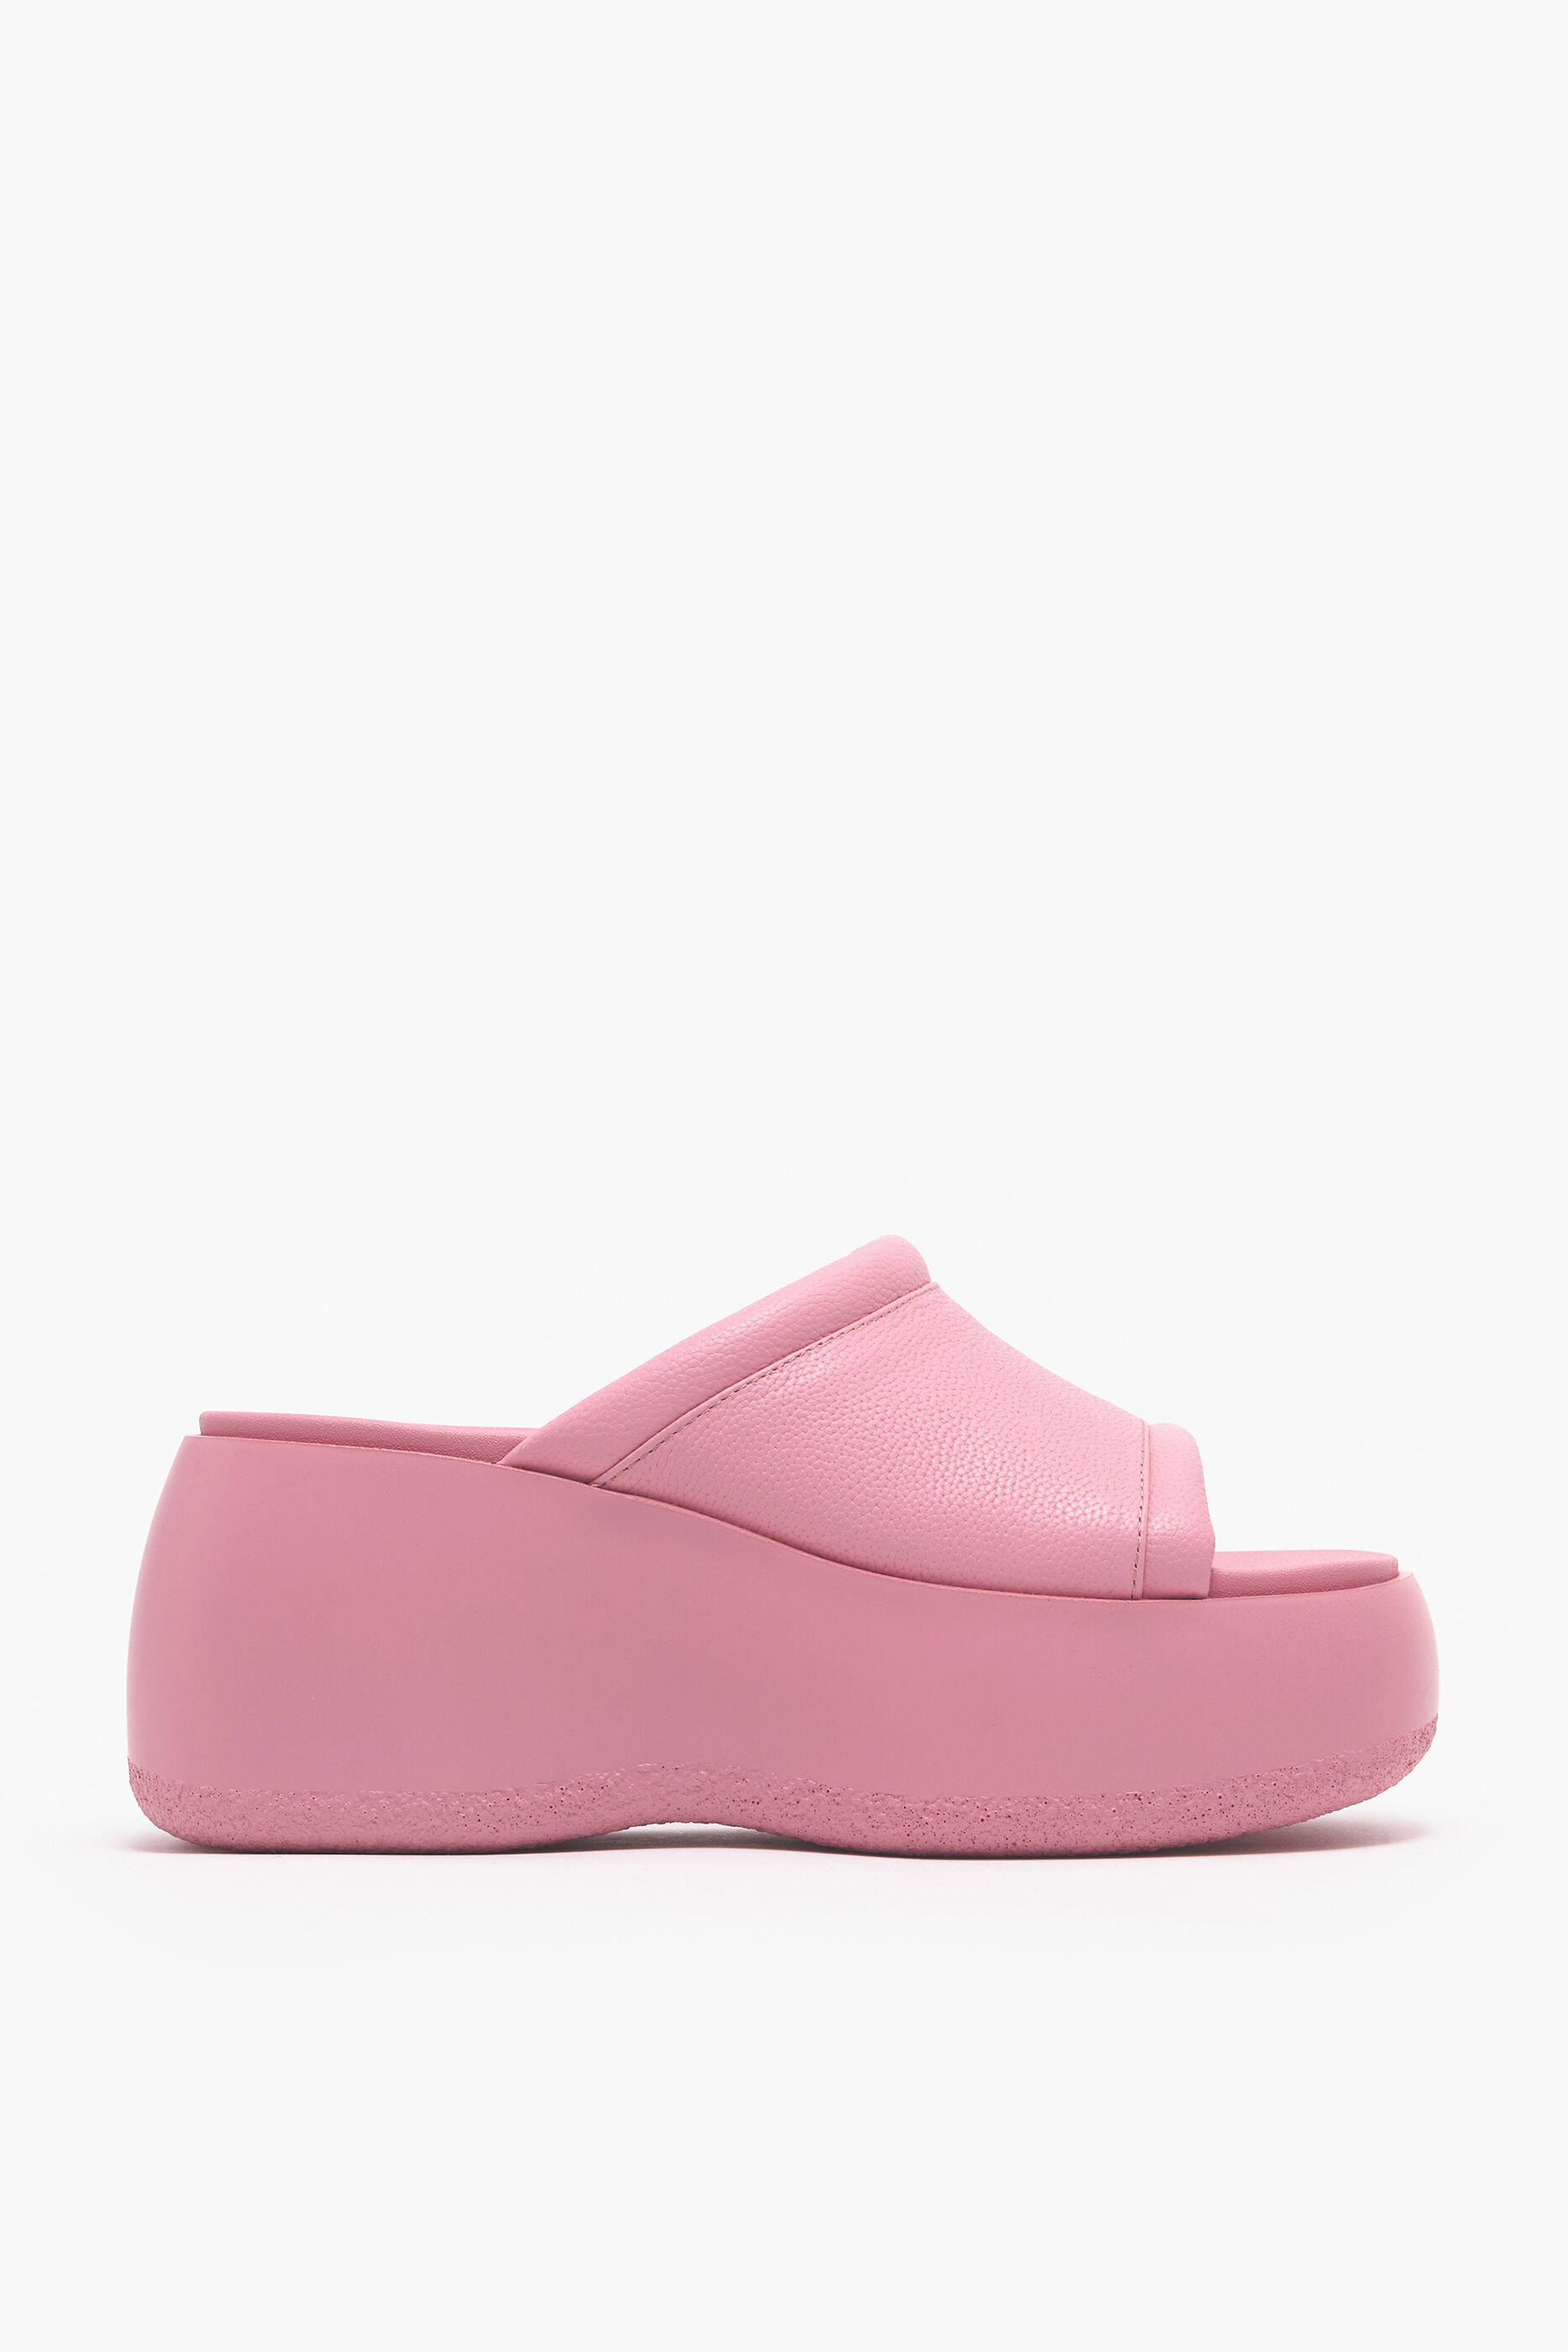 Buy Pink Platform LaceUp Heel Sandals for Women Online in India